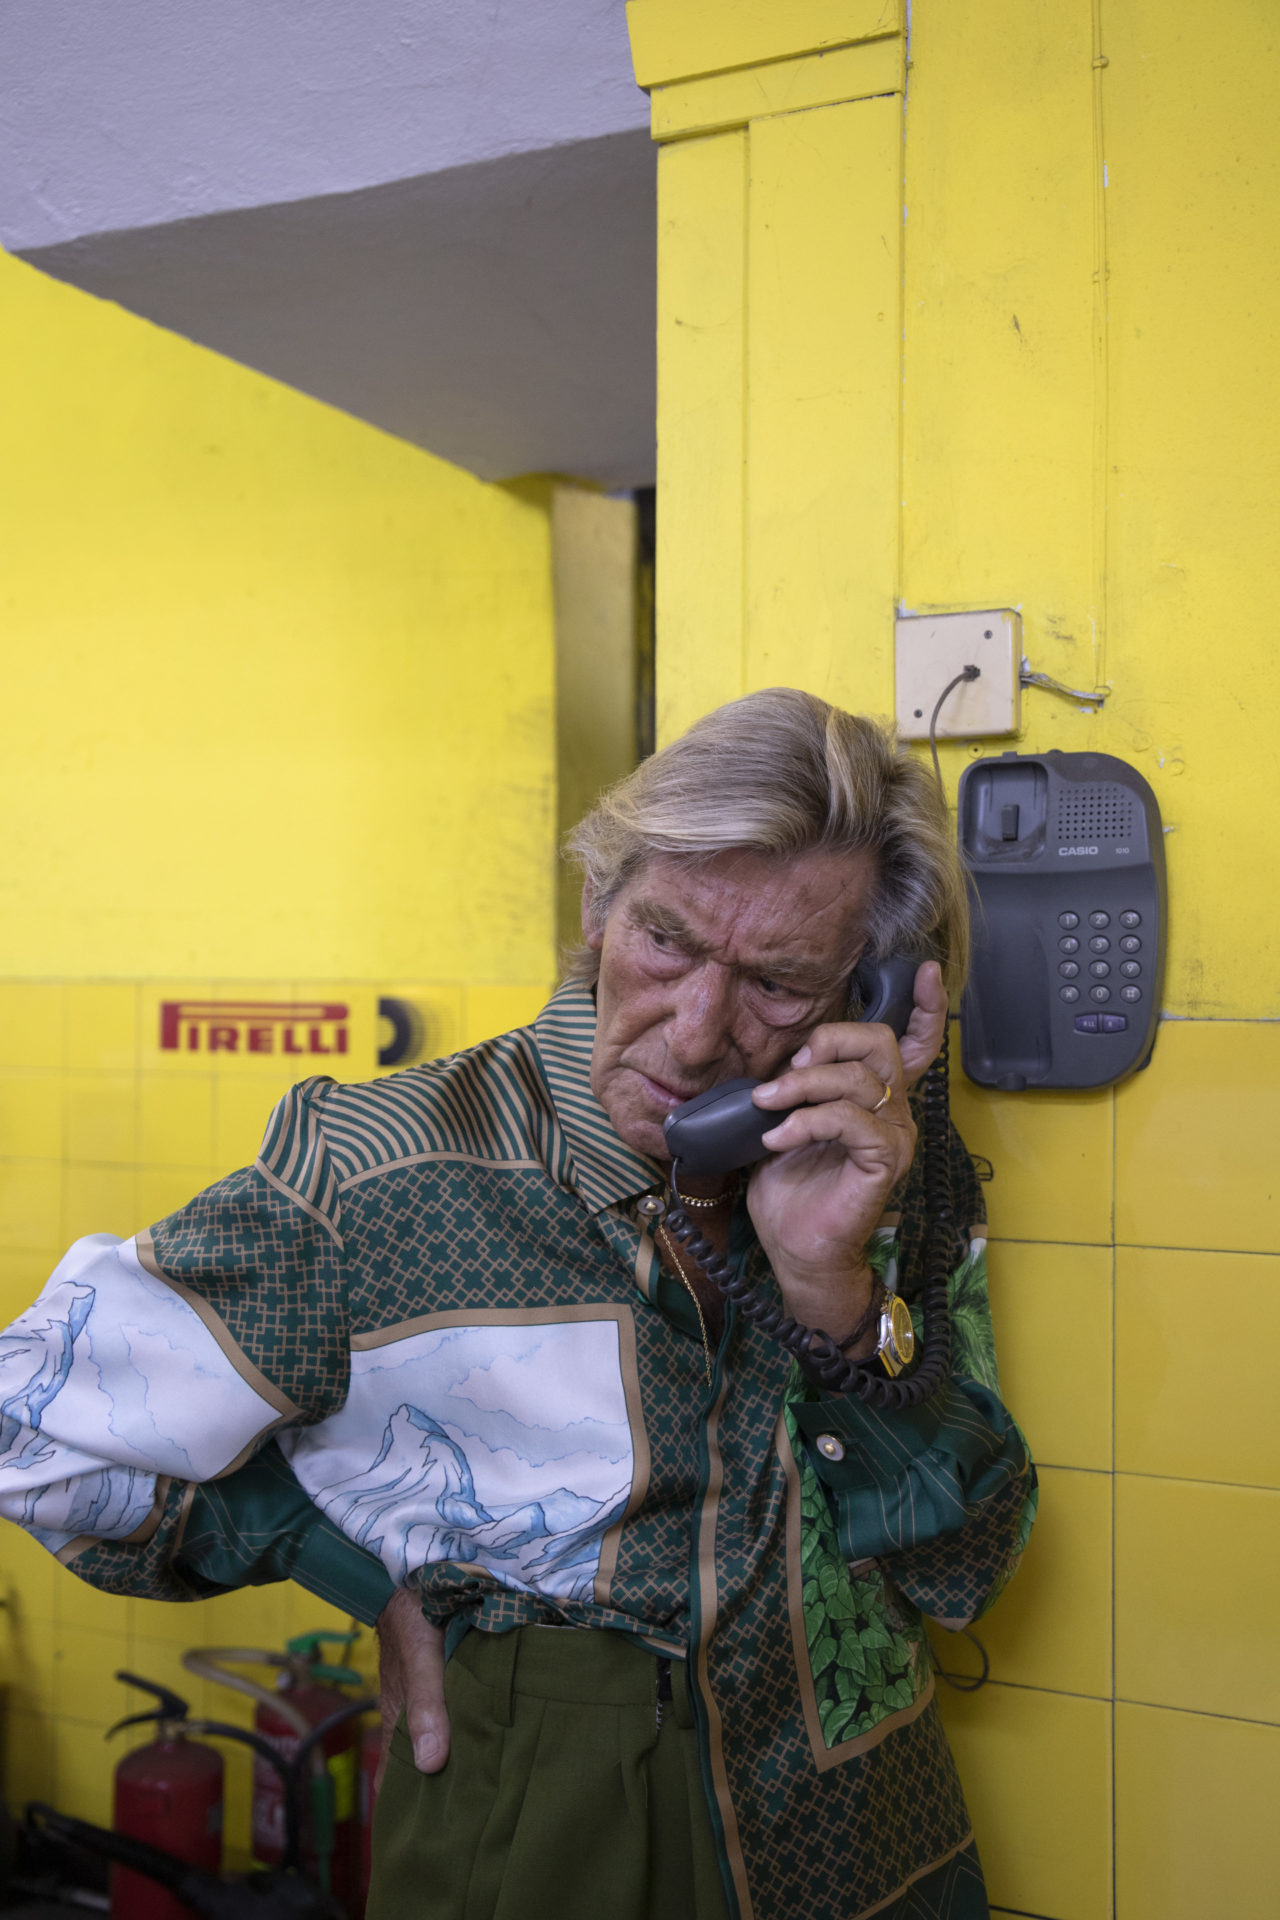 Homme agé en veste verte et blanche téléphonant d'un téléphone publique dans une salle de carrelage jaune